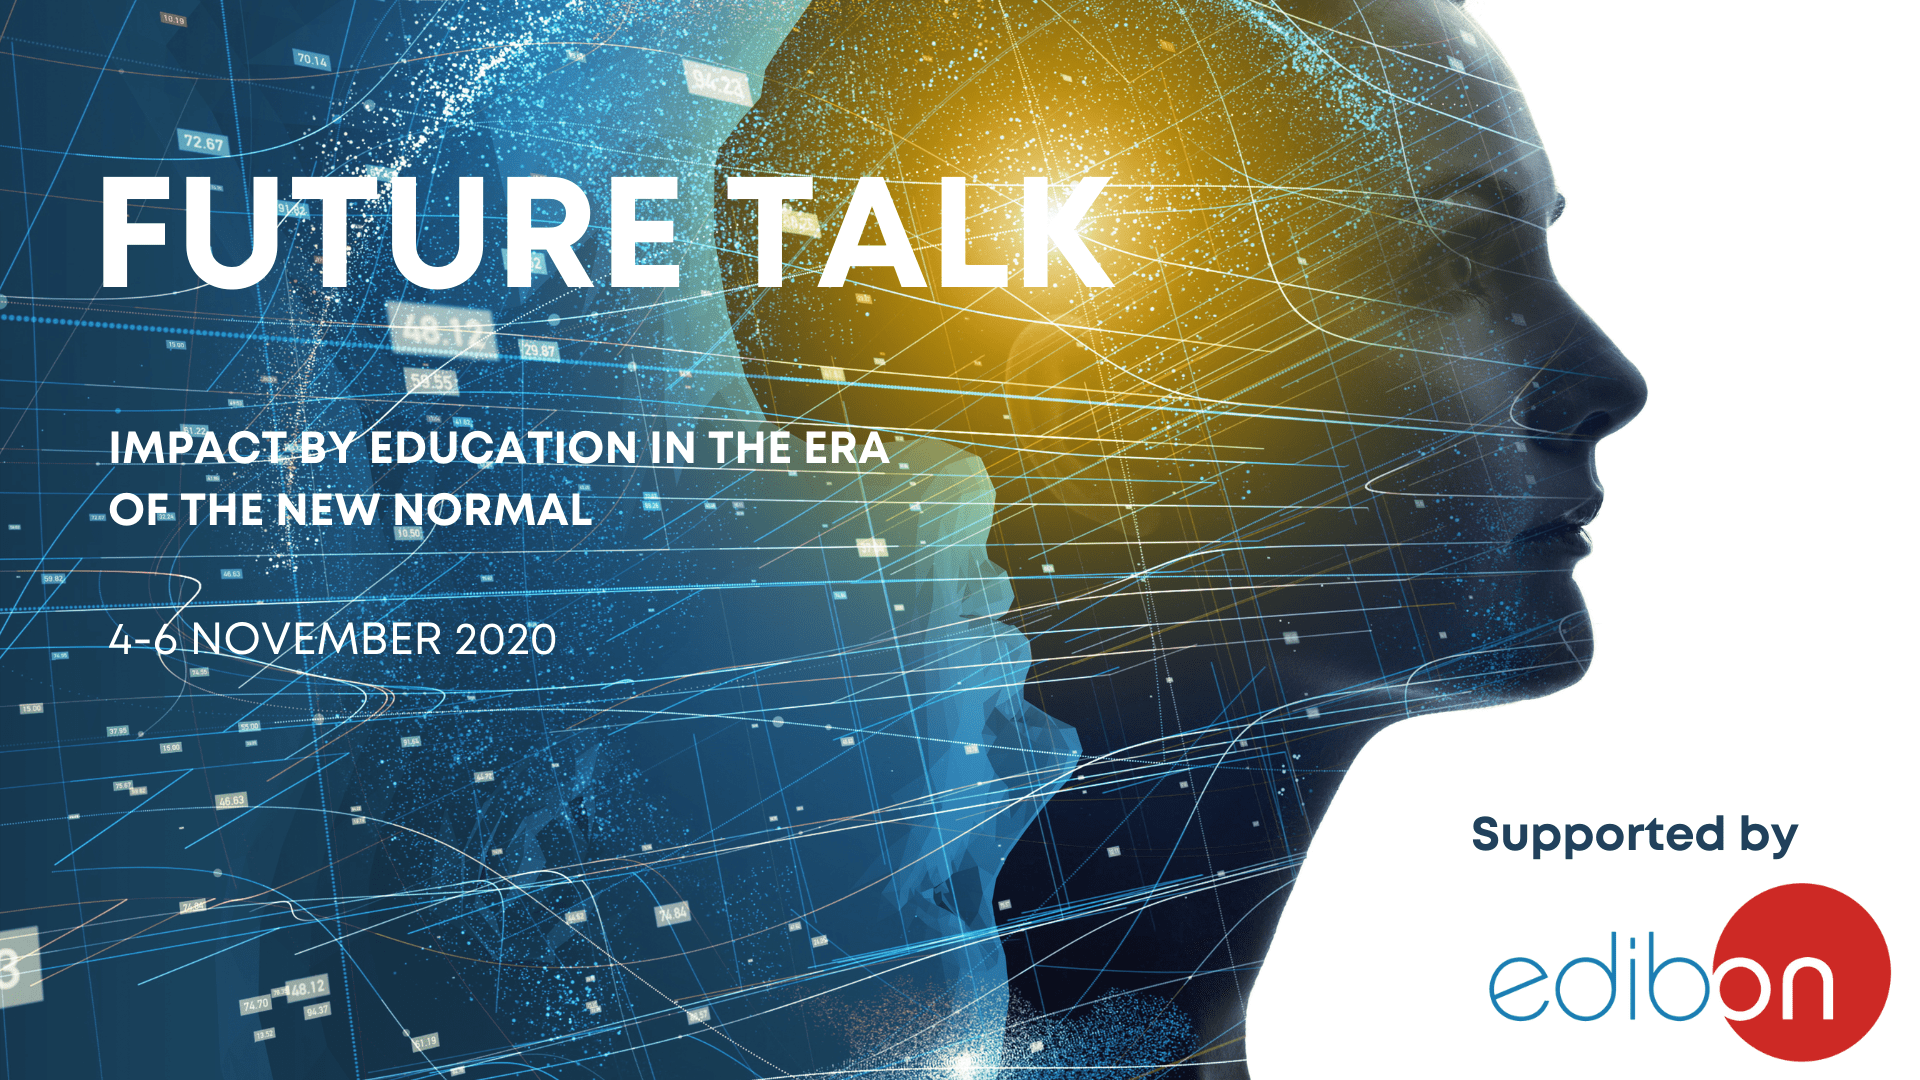 Edibon supports Future Talk 2020